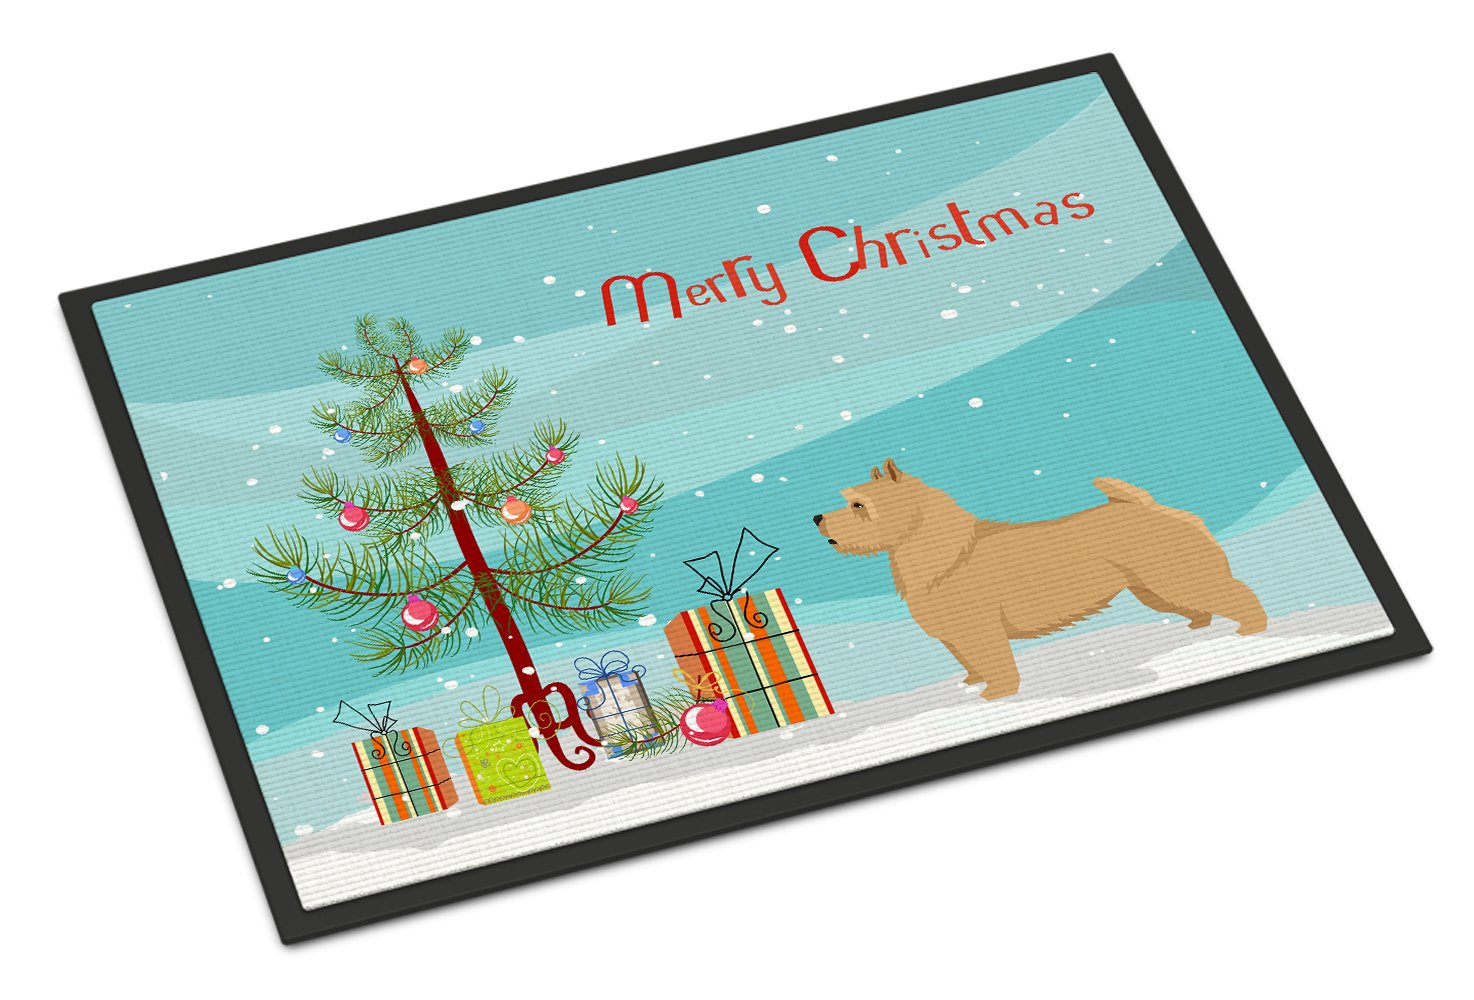 Norwich Terrier Christmas Tree Indoor or Outdoor Mat 24x36 CK3551JMAT by Caroline's Treasures